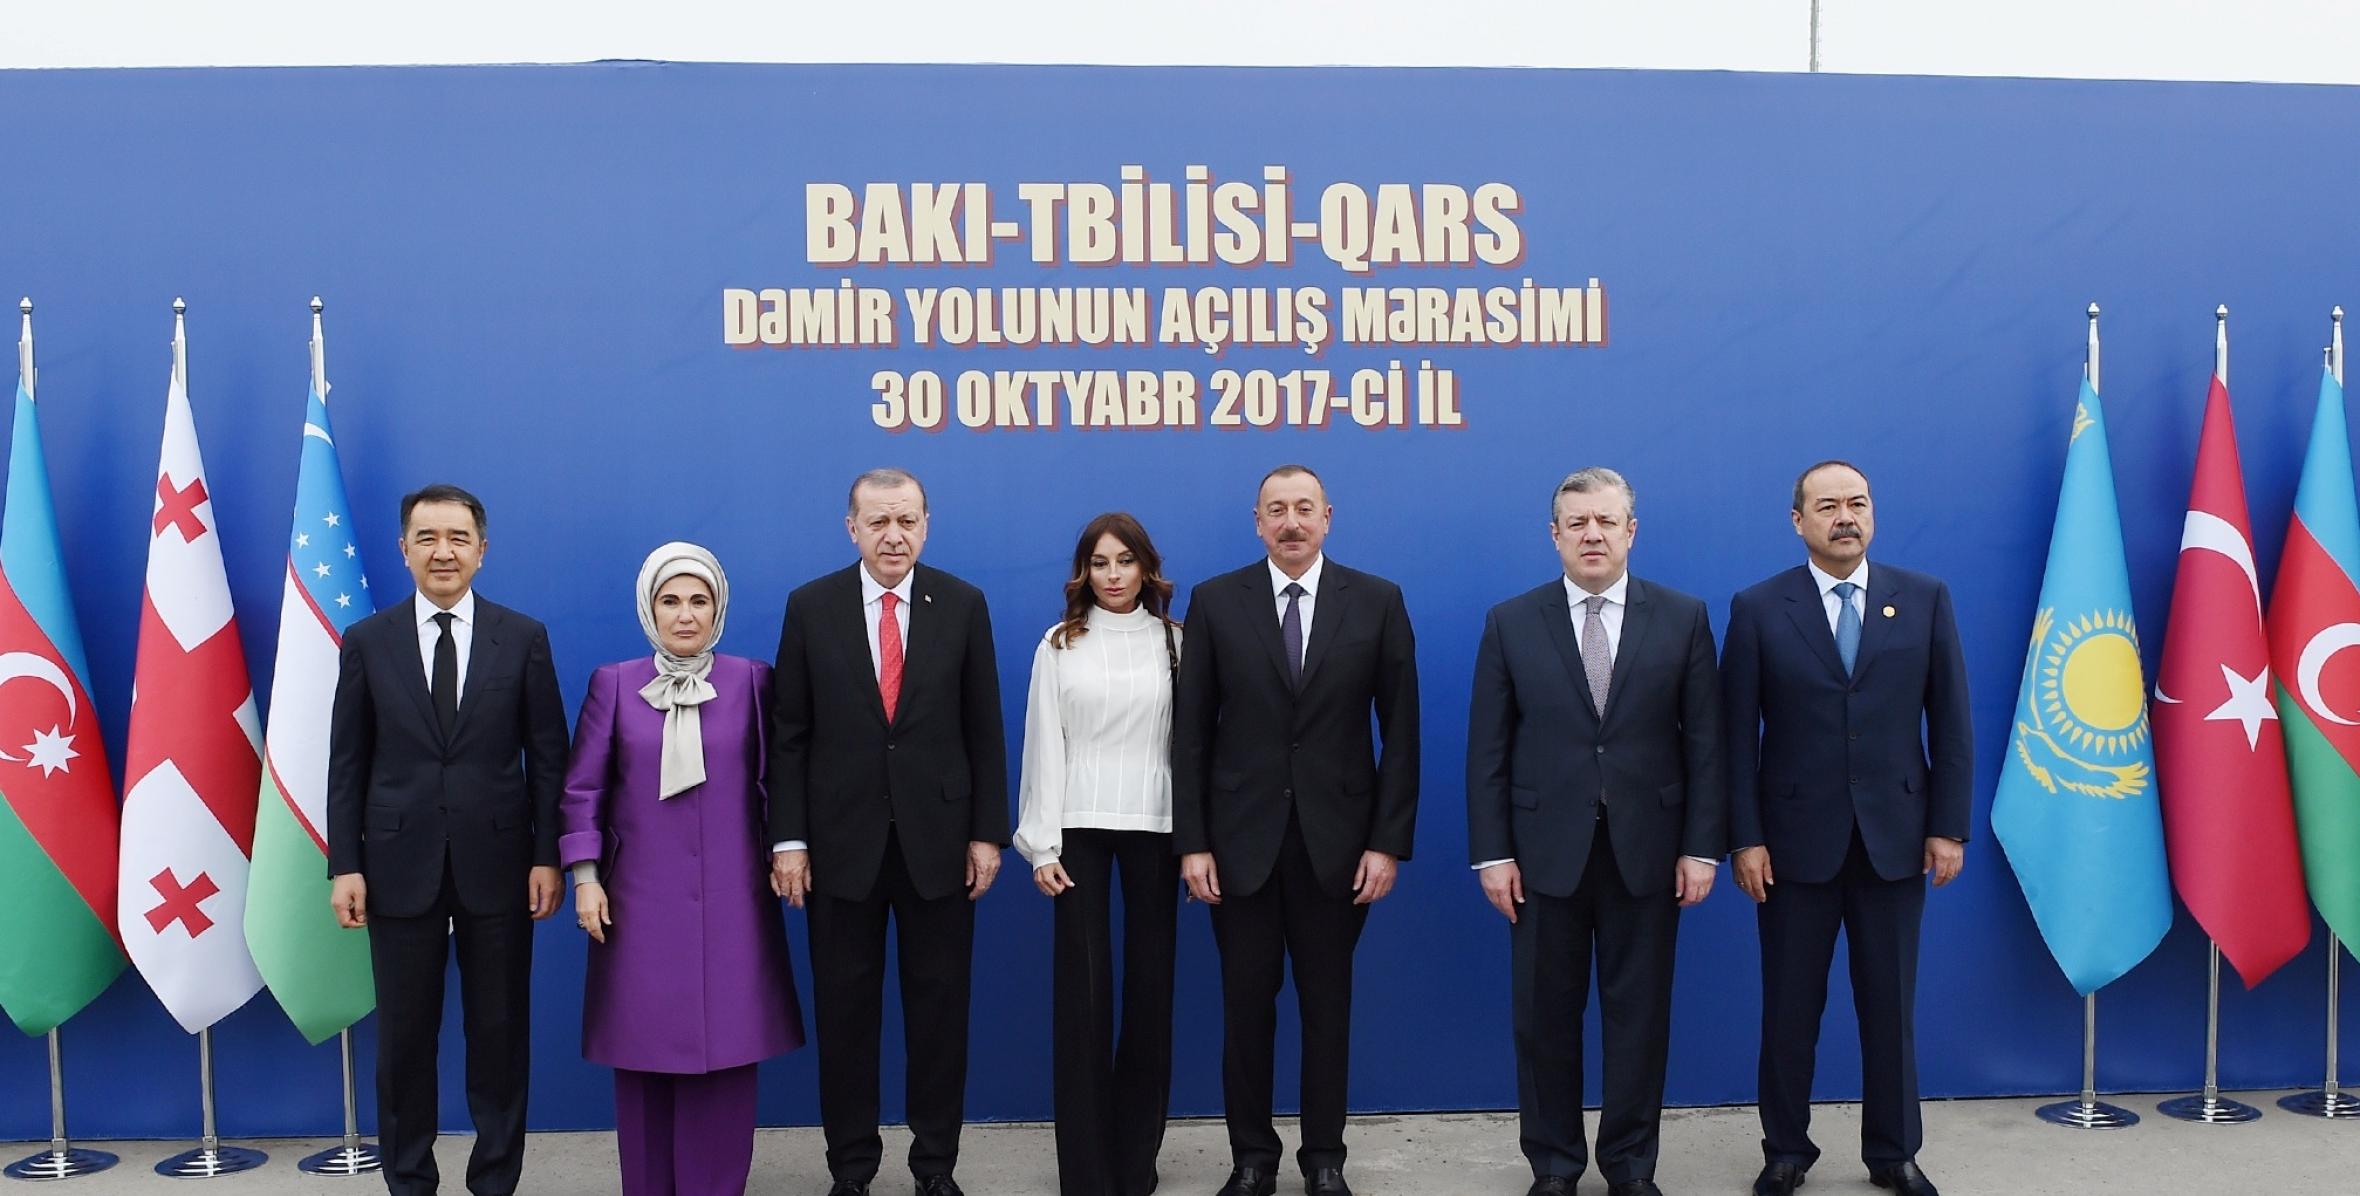 İlham Əliyev Bakı-Tbilisi-Qars dəmir yolunun açılış mərasimində iştirak edib